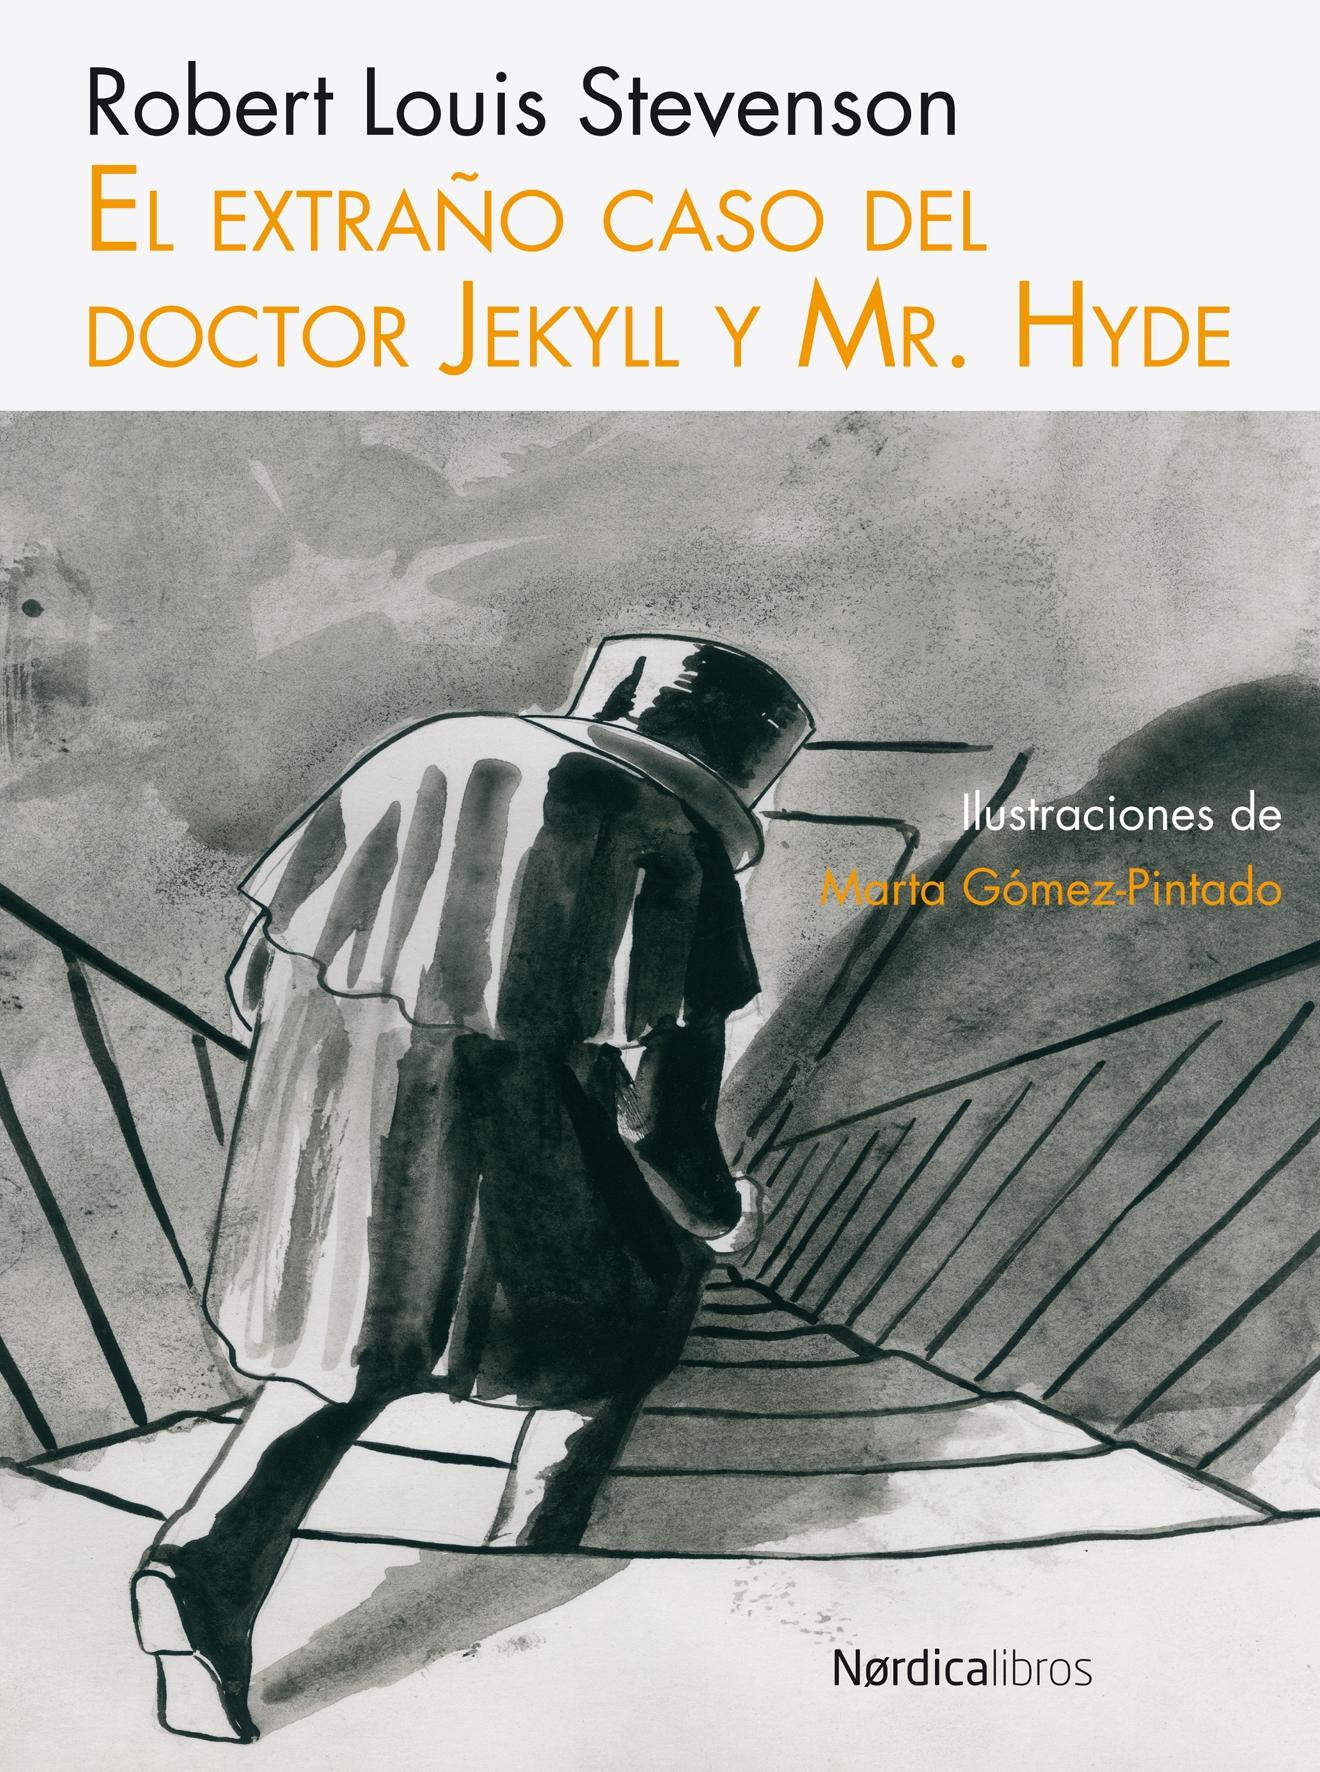 Extraño Caso del Doctor Jekyll y Mr Hyde "Ilus. Gomez Pintado". 